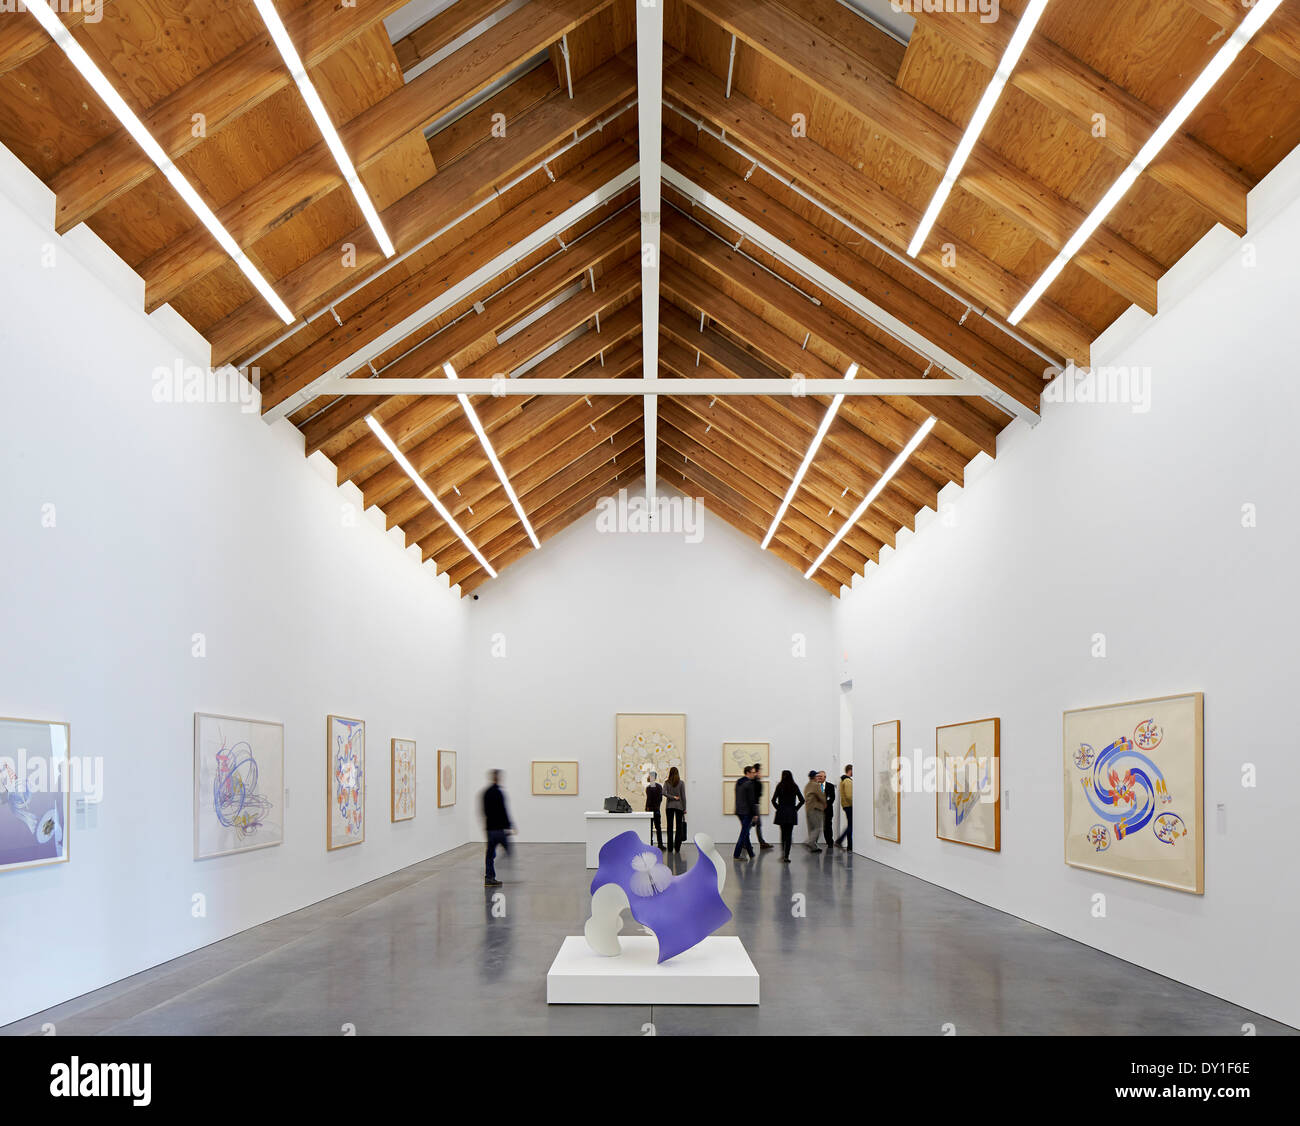 Parrish Art Museum, Wassermühle, Vereinigte Staaten von Amerika. Architekt: Herzog & de Meuron, 2012. Ausstellungsfläche mit schrillen Holzdecke Stockfoto